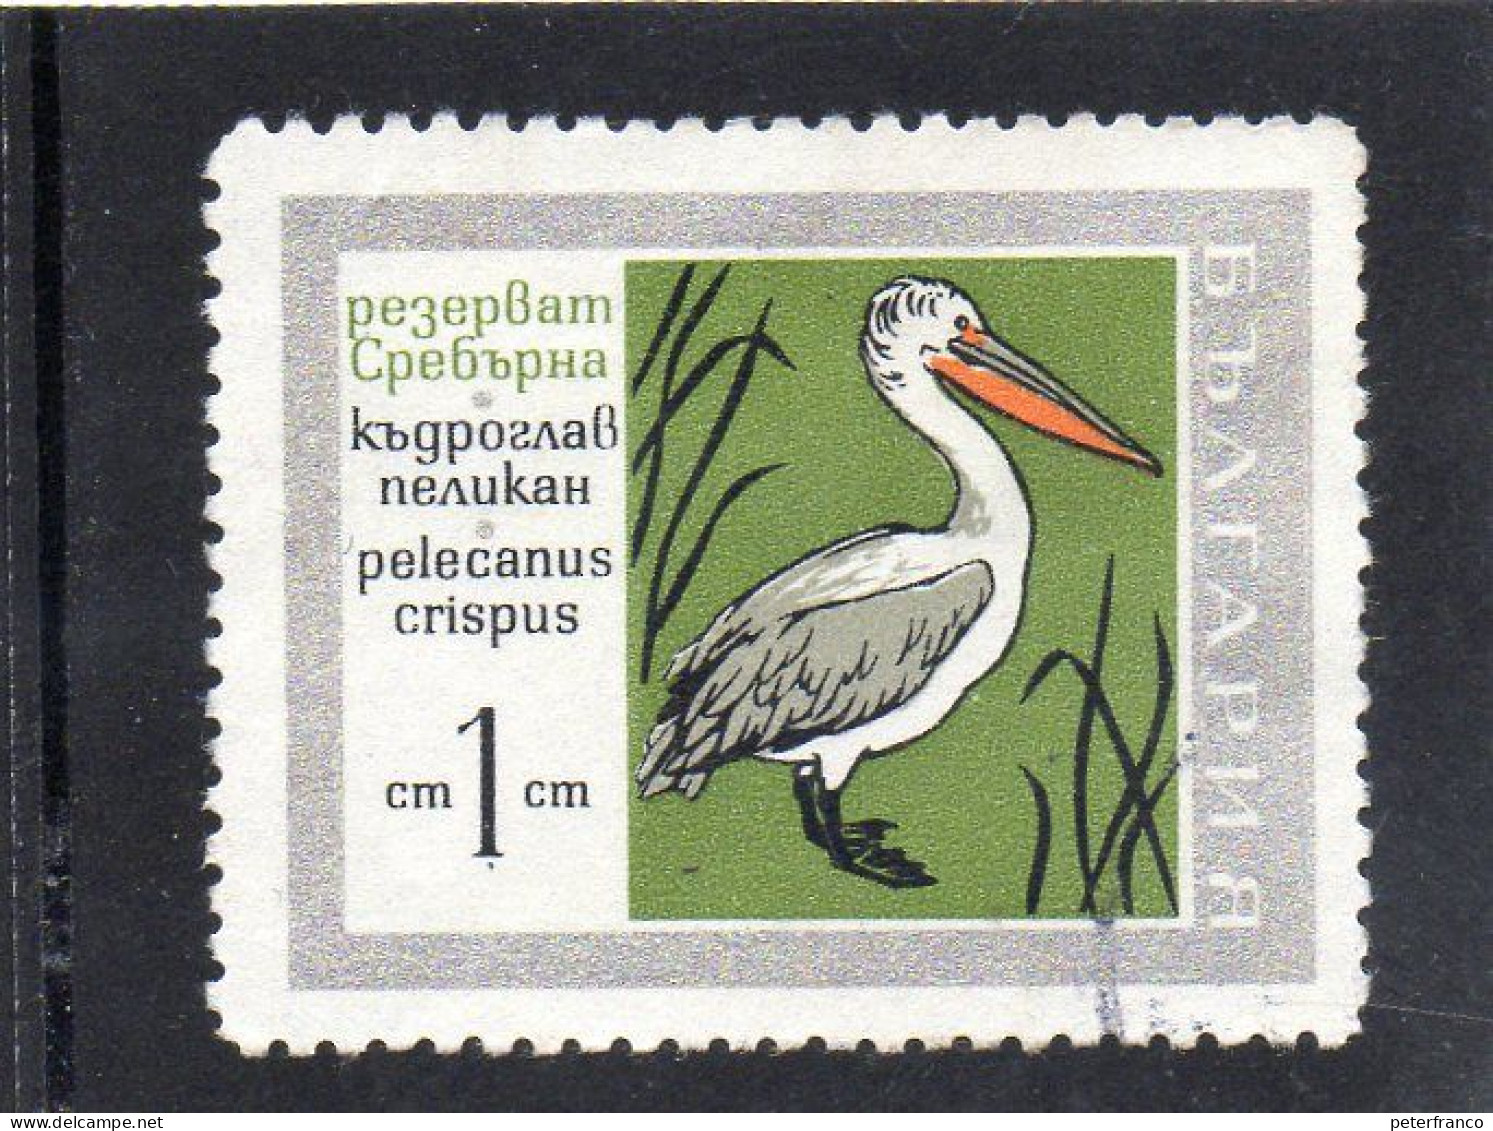 1968 Bulgaria - Petko Pellicano - Cigognes & échassiers